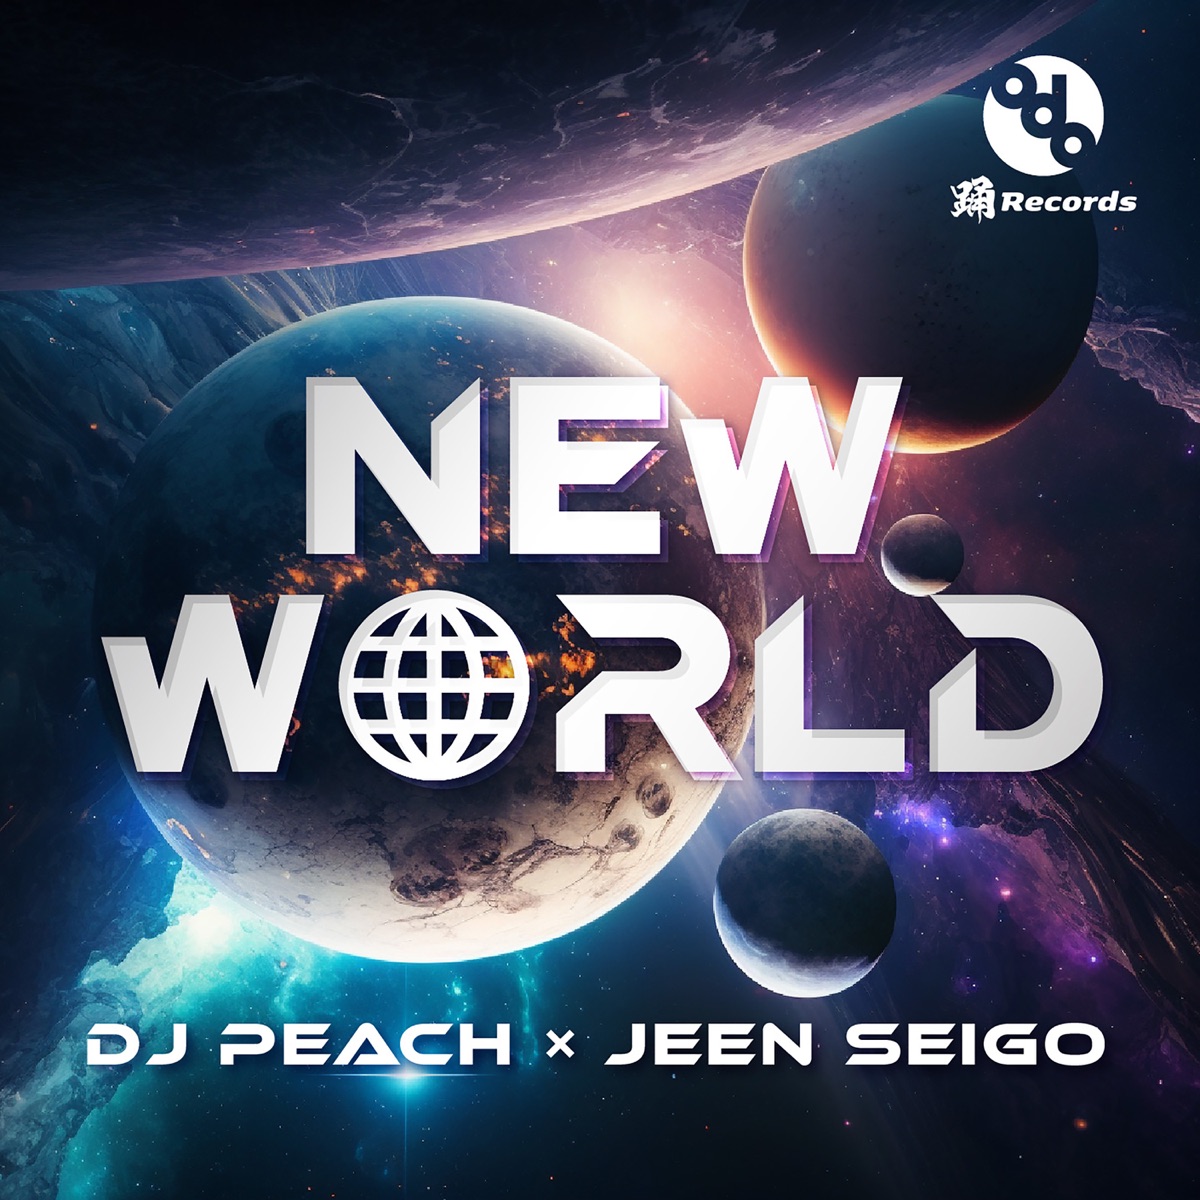 New World / DJ PEACH × JEEN SEIGO 23.03.10 (Fri) Release!!